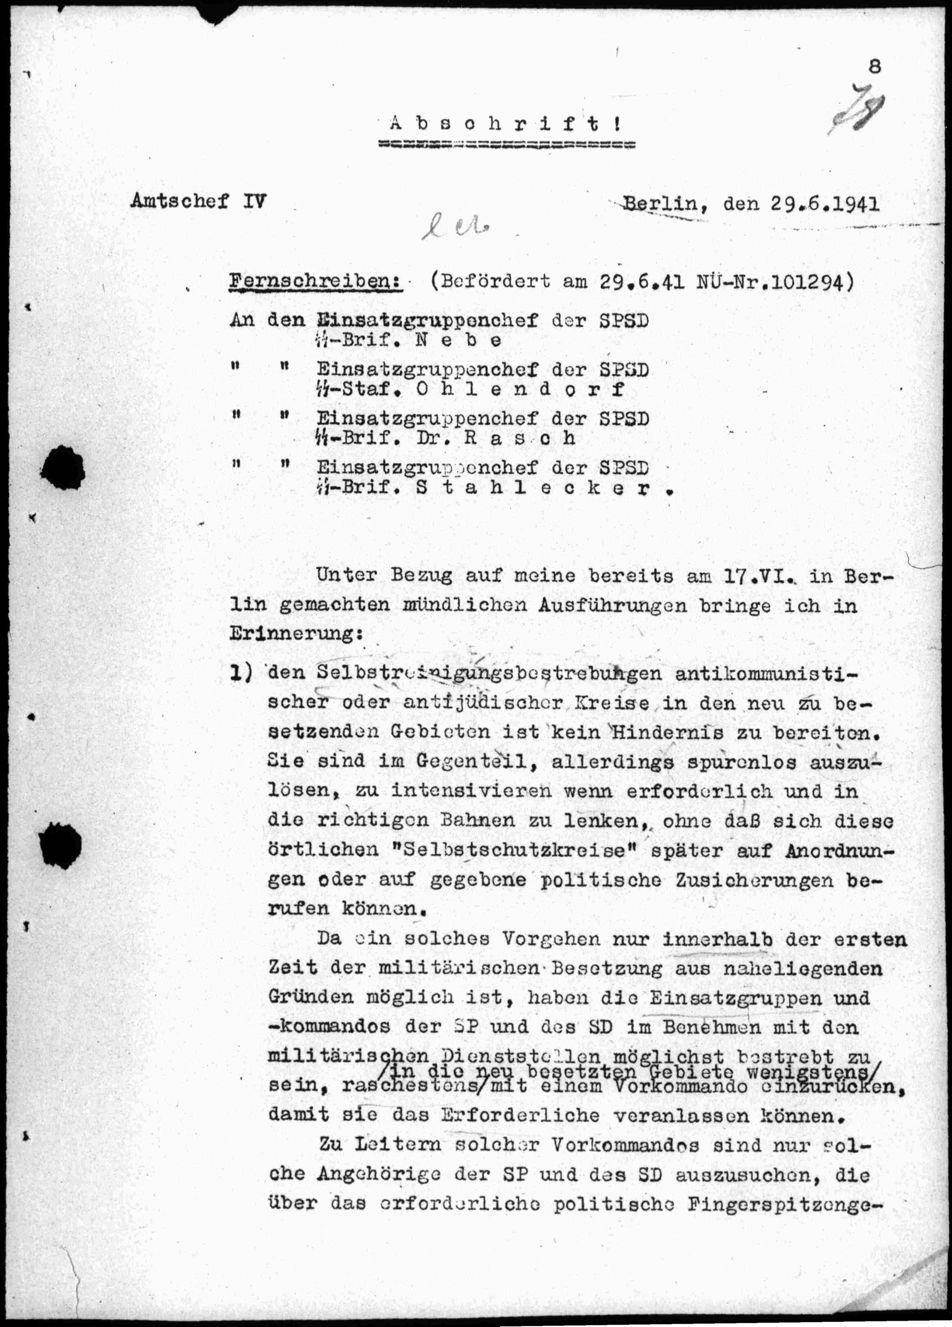 Instructions de heydrich aux Einsatzgruppen du 29/06/1941